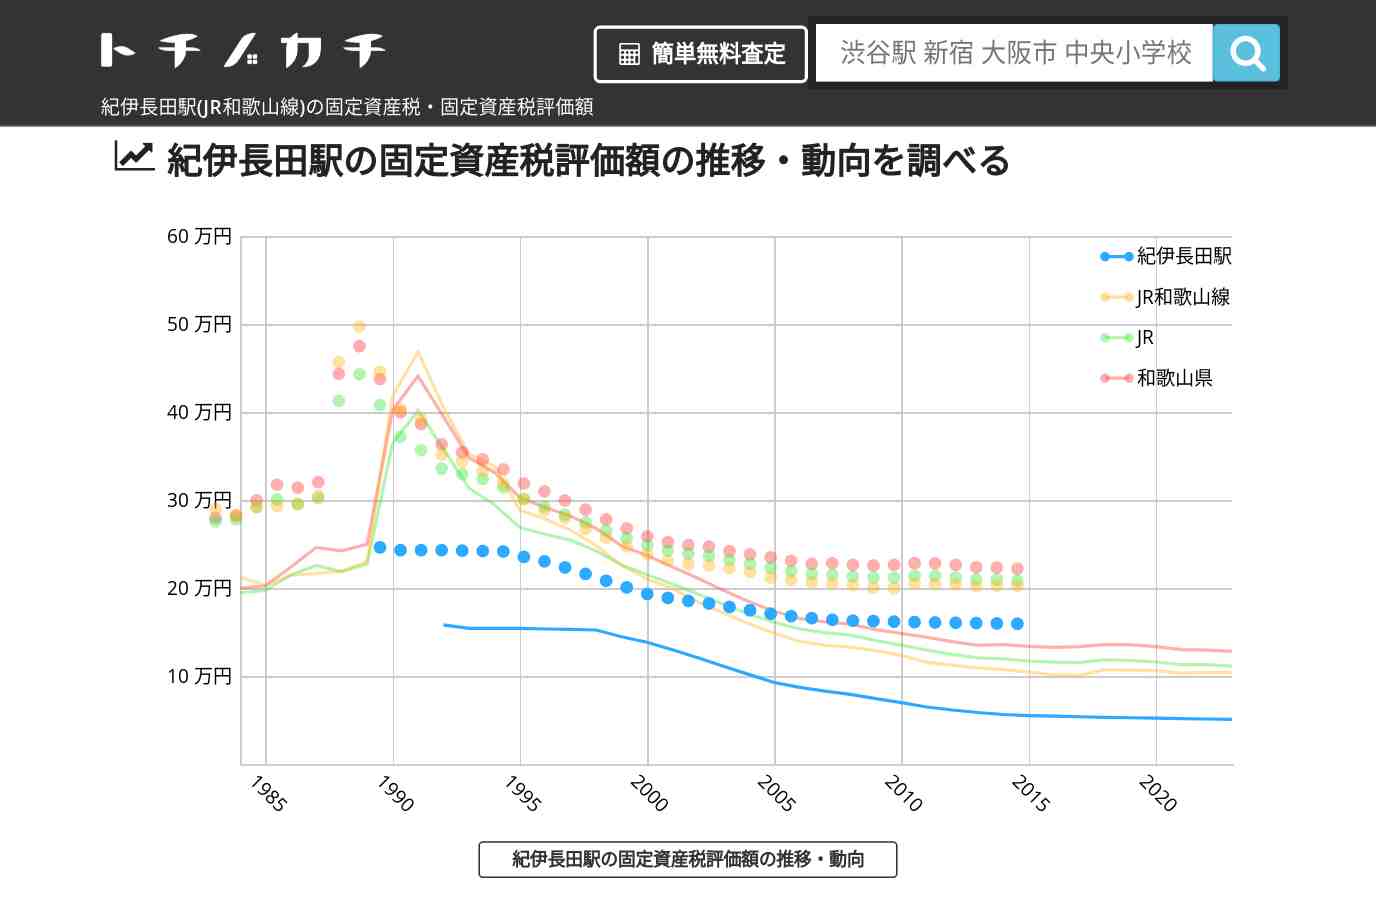 紀伊長田駅(JR和歌山線)の固定資産税・固定資産税評価額 | トチノカチ